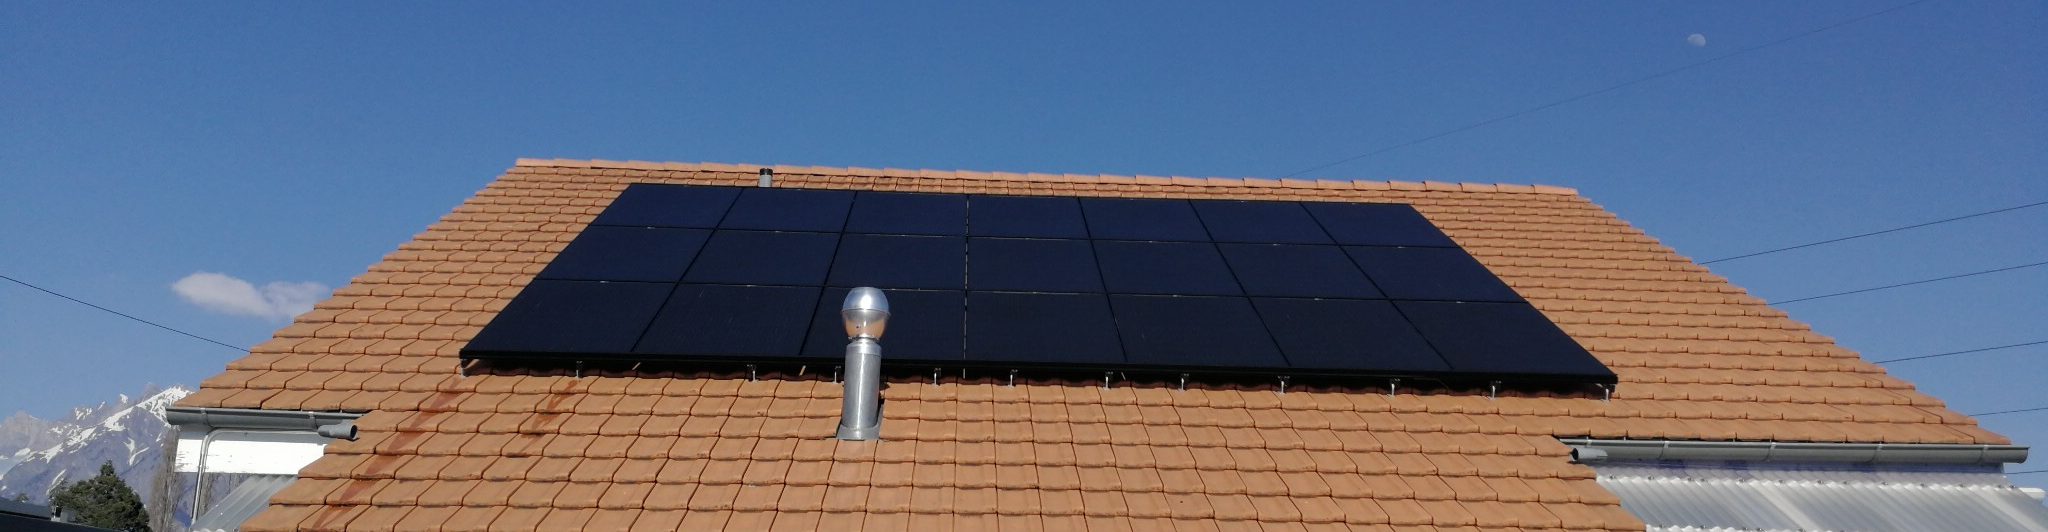 Installation photovoltaïque en ajouté